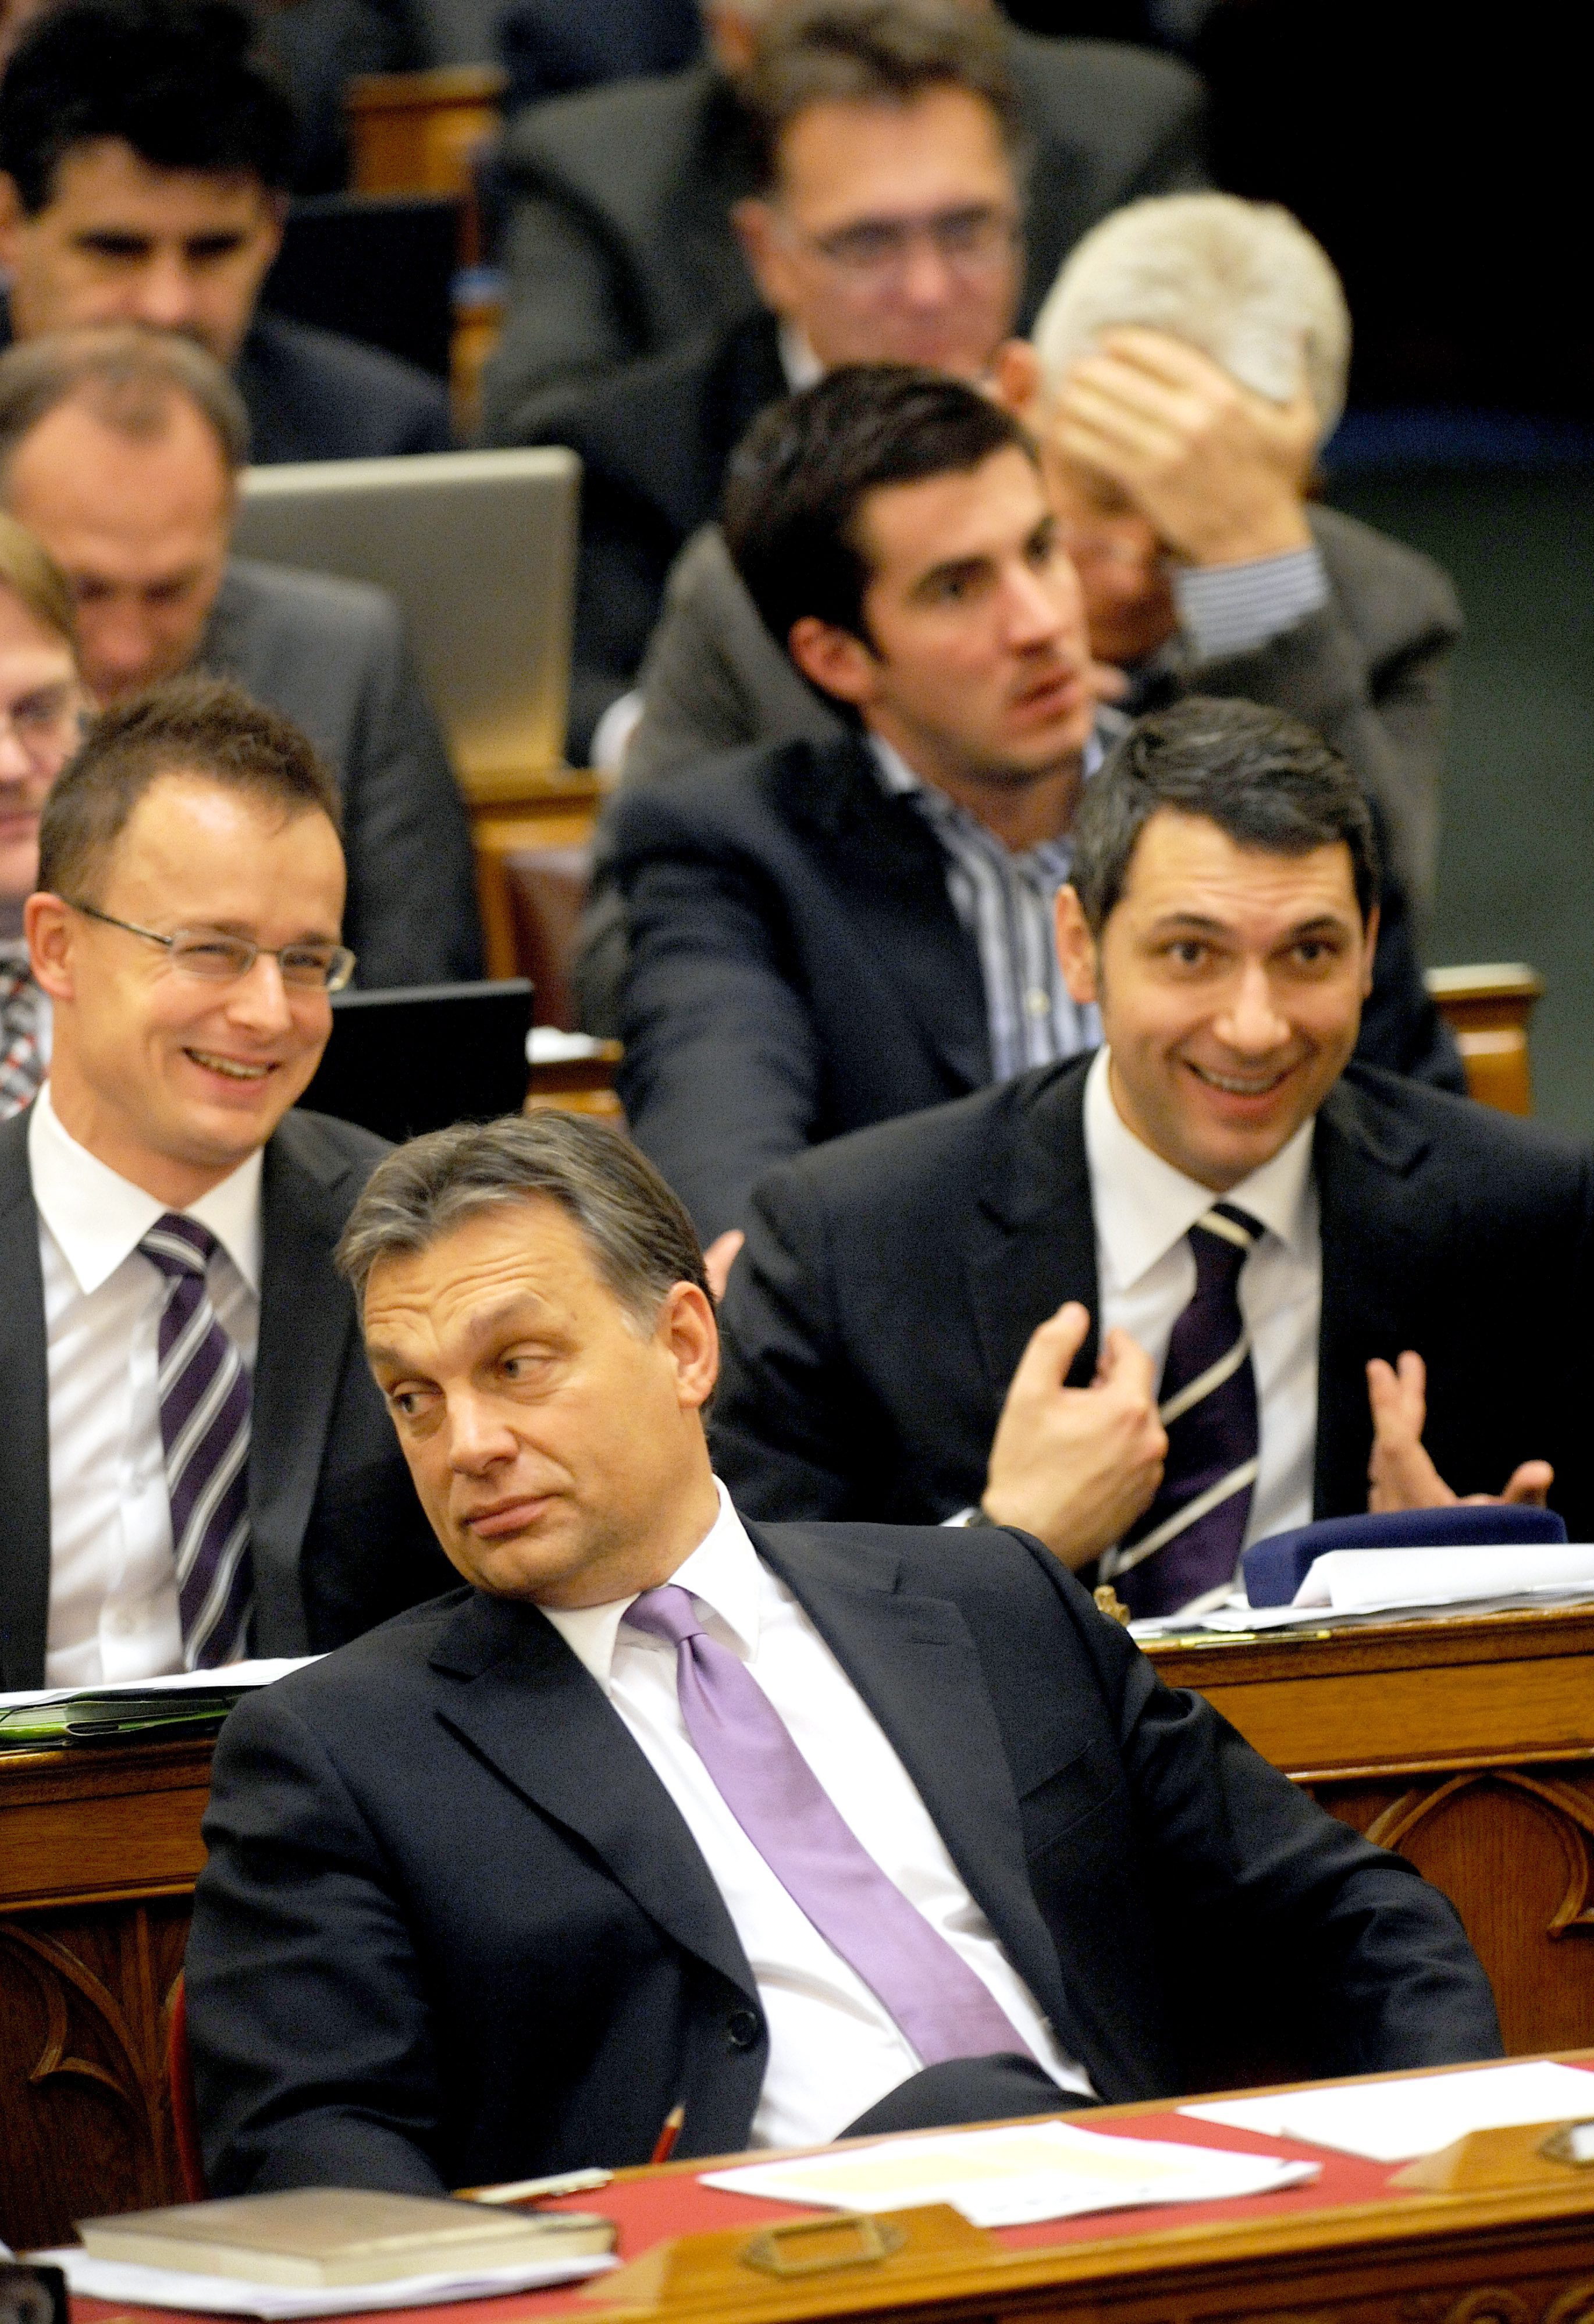 Megszólalt Lázár: ezért folytatja nélküle Orbán - Blikk